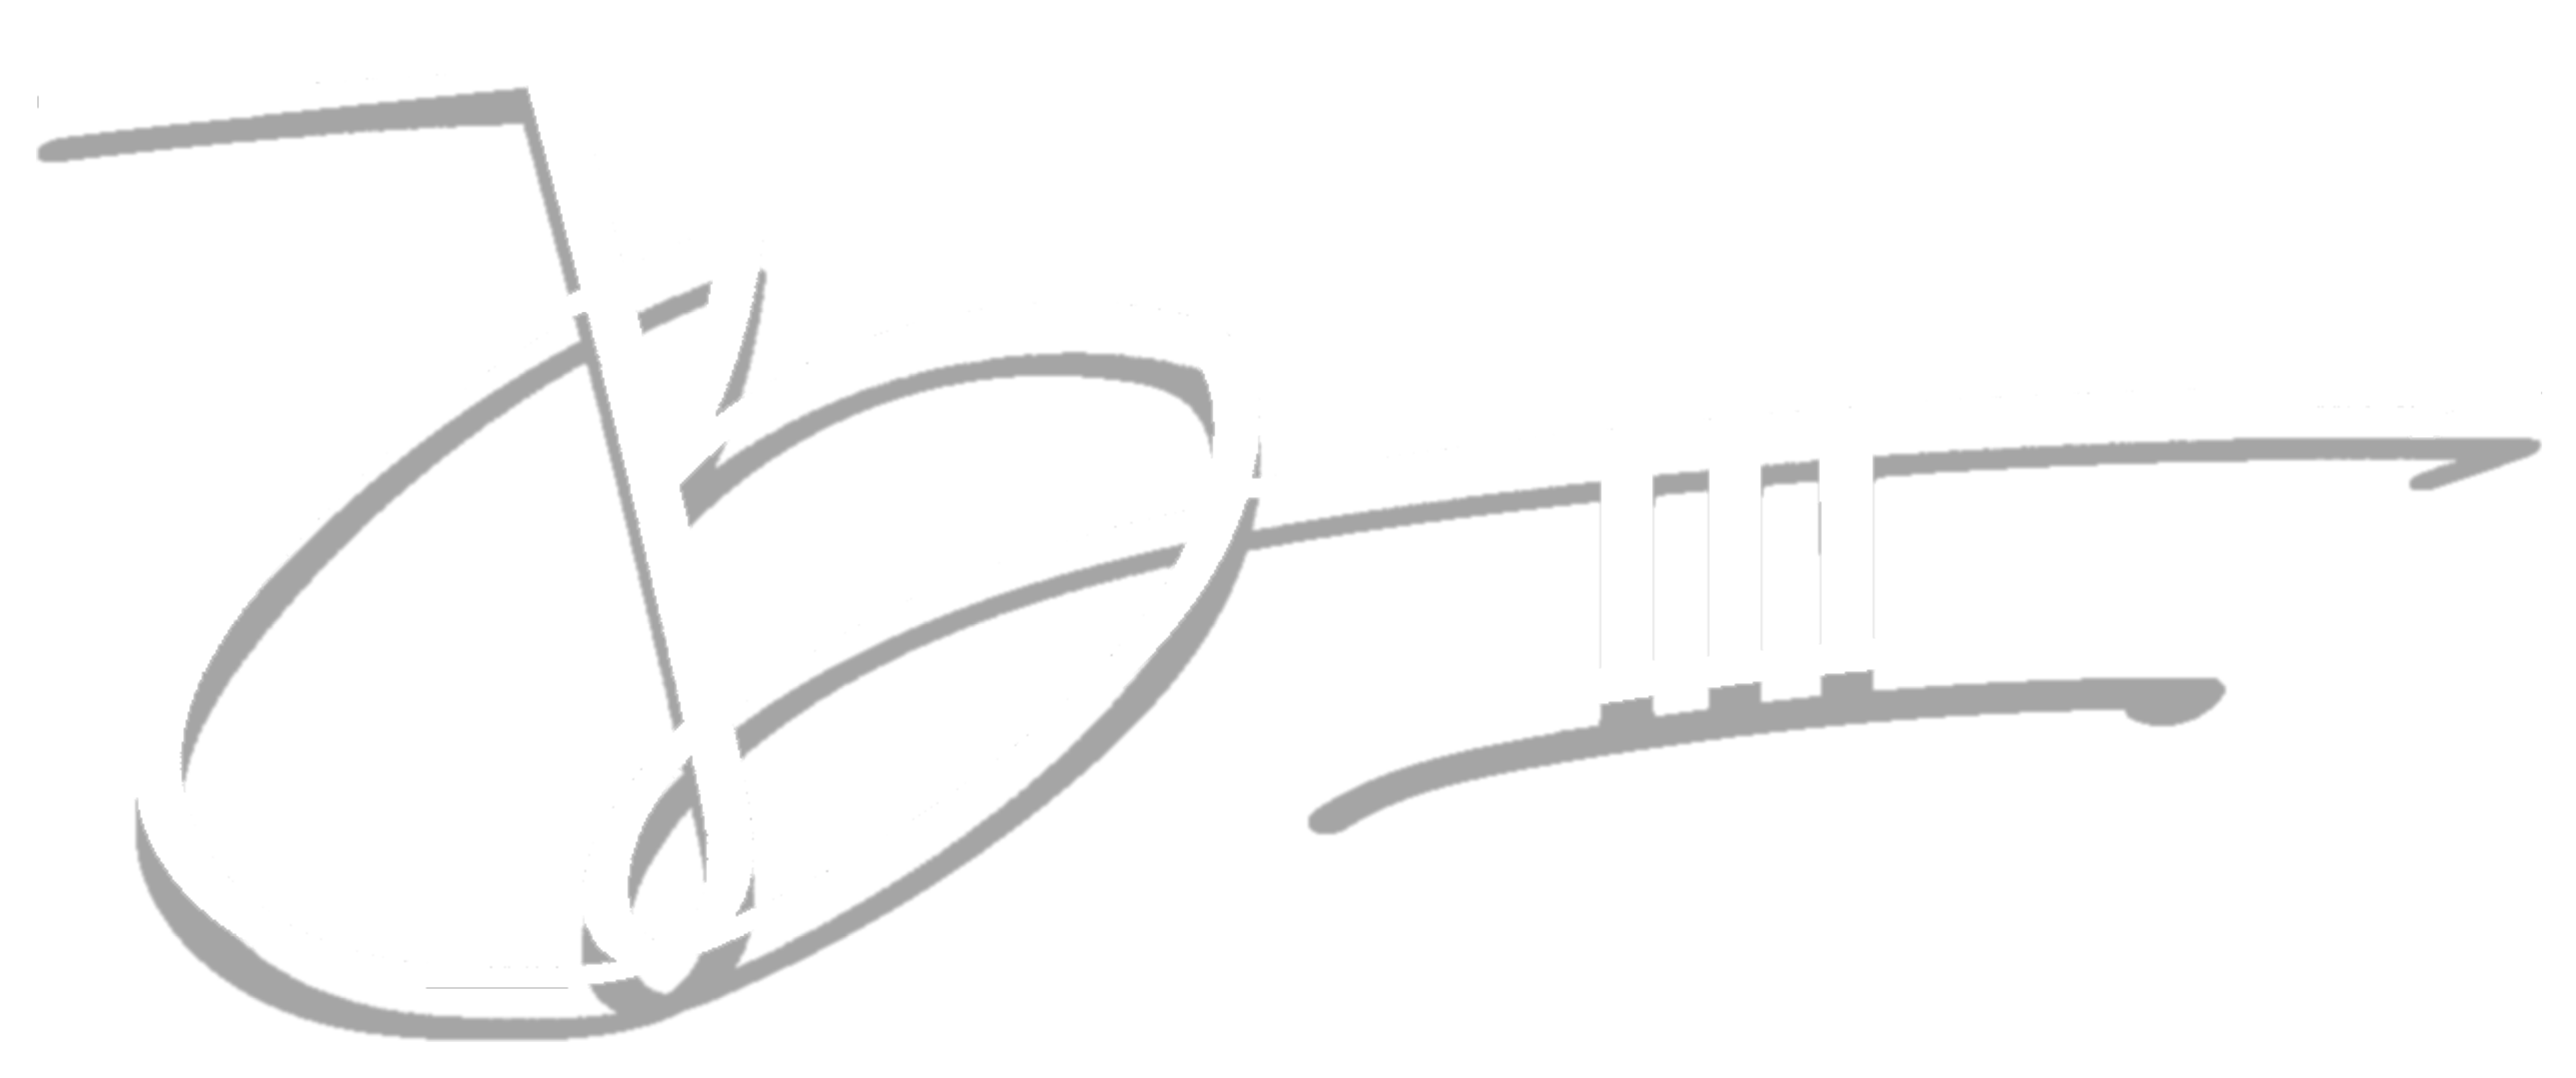 JB3 dropshadow logo